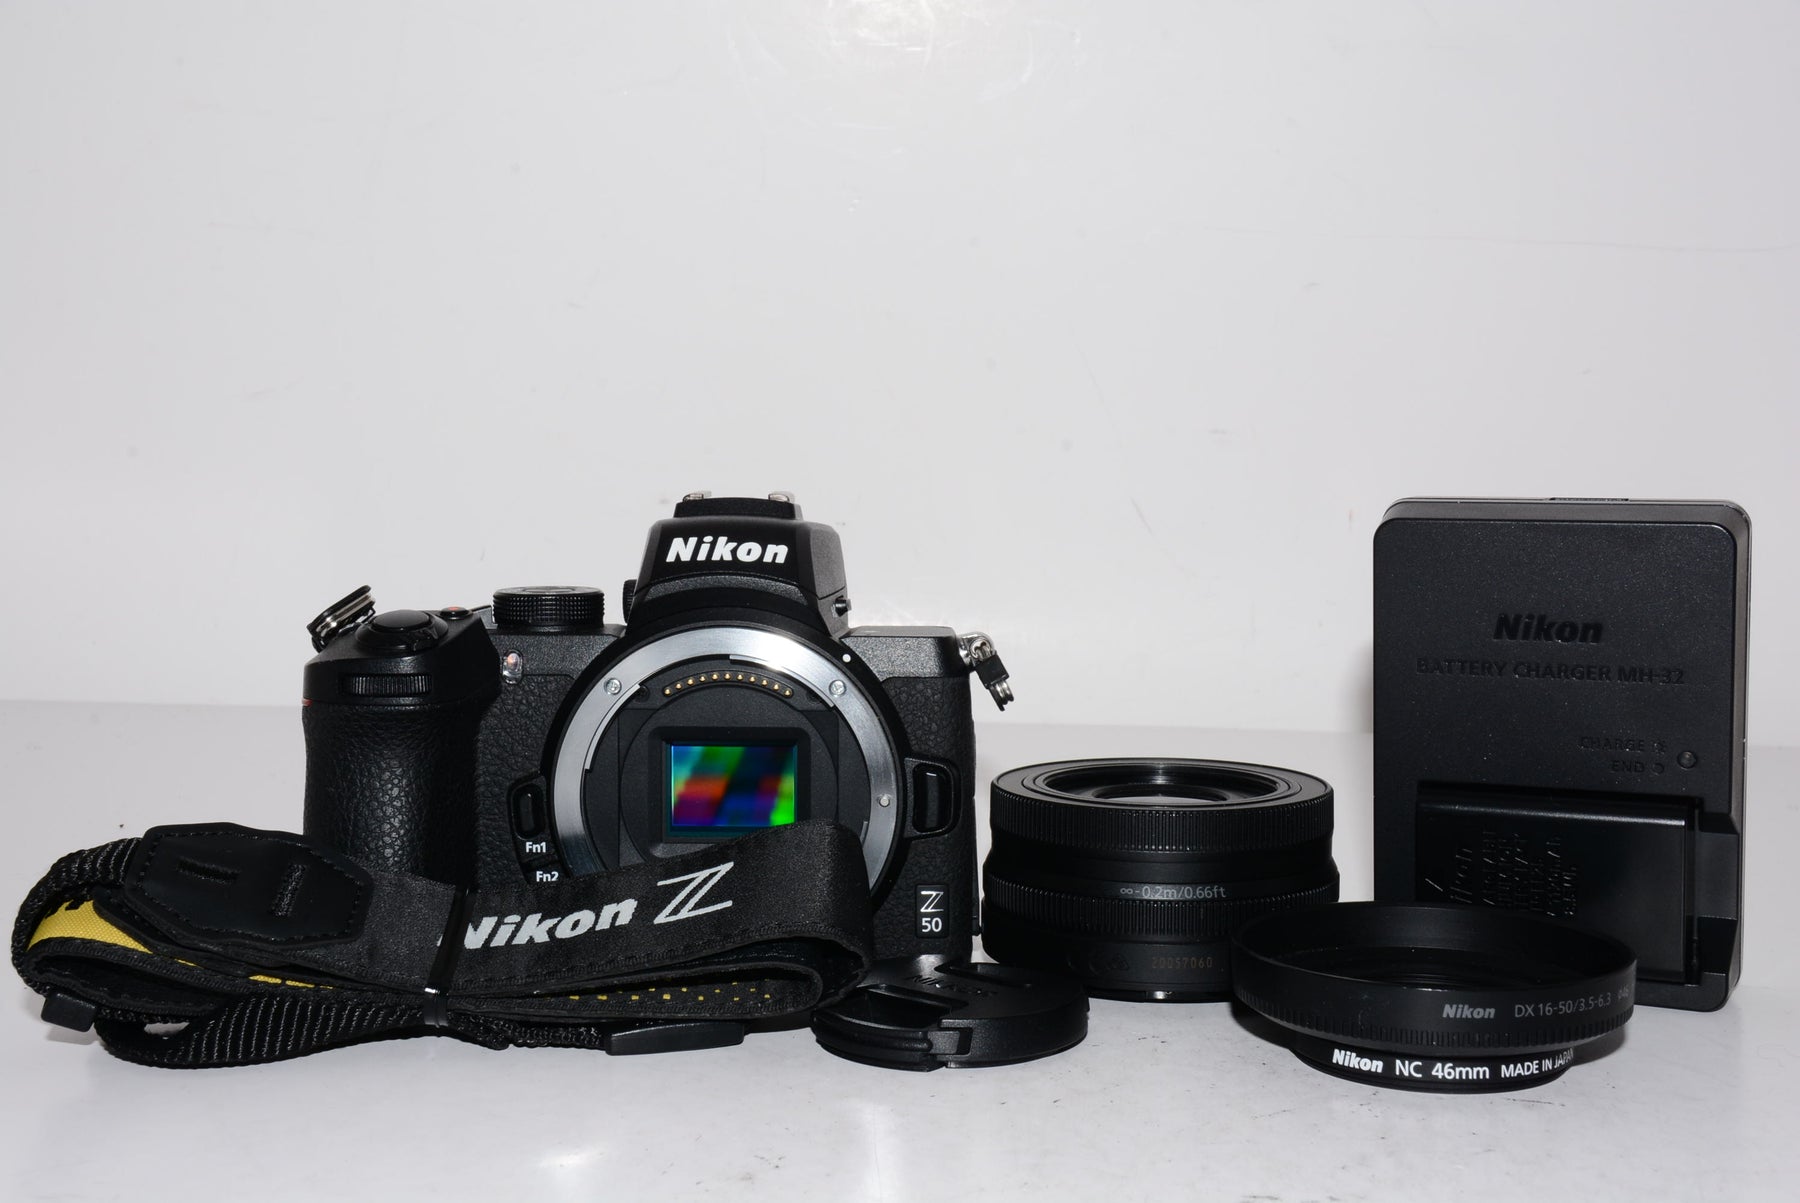 【外観特上級】Nikon ミラーレス一眼カメラ Z50 レンズキット NIKKOR Z DX 16-50mm f/3.5-6.3 VR付属 Z50LK16-50 ブラック